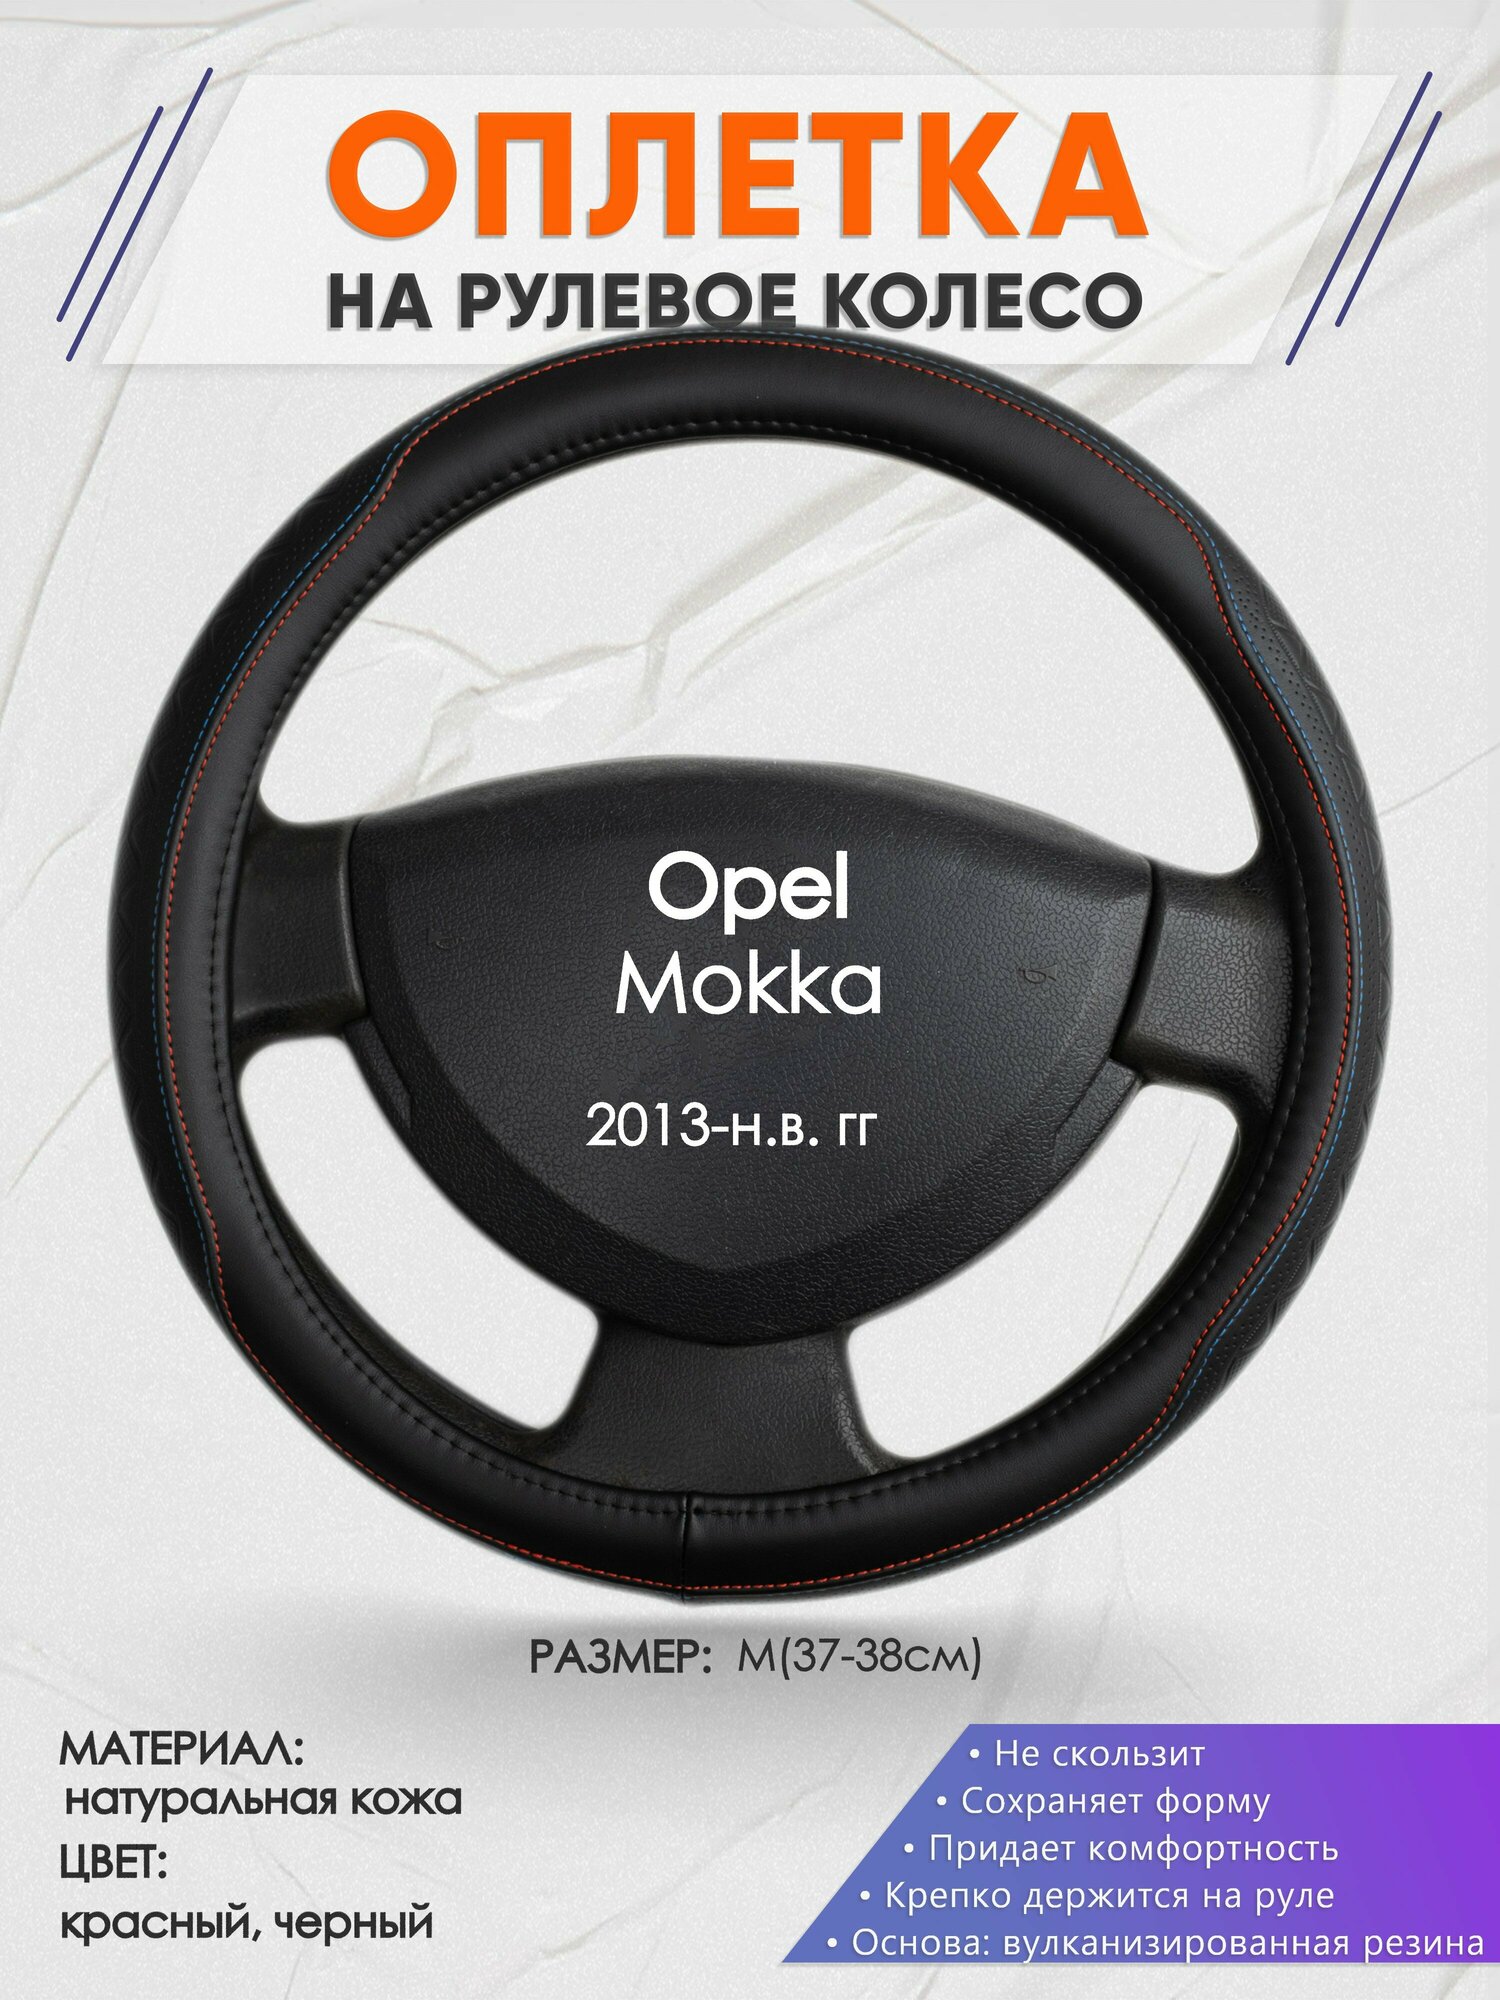 Оплетка на руль для Opel Mokka (Опель Мокка) 2013-н. в M(37-38см) Натуральная кожа 32